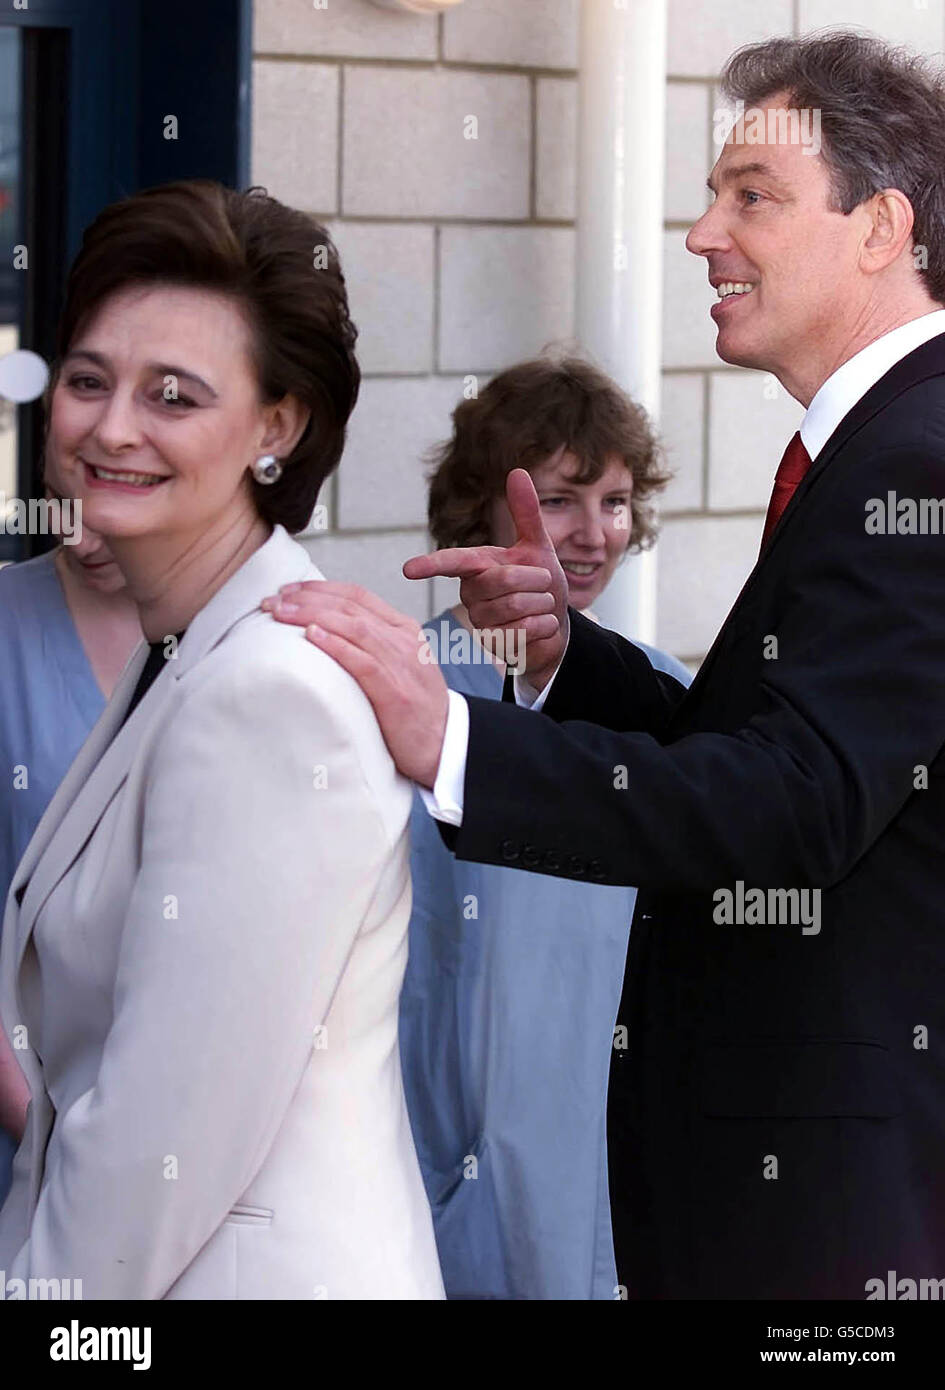 Il primo ministro britannico Tony Blair e sua moglie Cherie arrivano al Queen Elizabeth Hospital di Greenwich, a sud-est di Londra, mentre continua la campagna elettorale per le elezioni generali del 7 giugno. Foto Stock